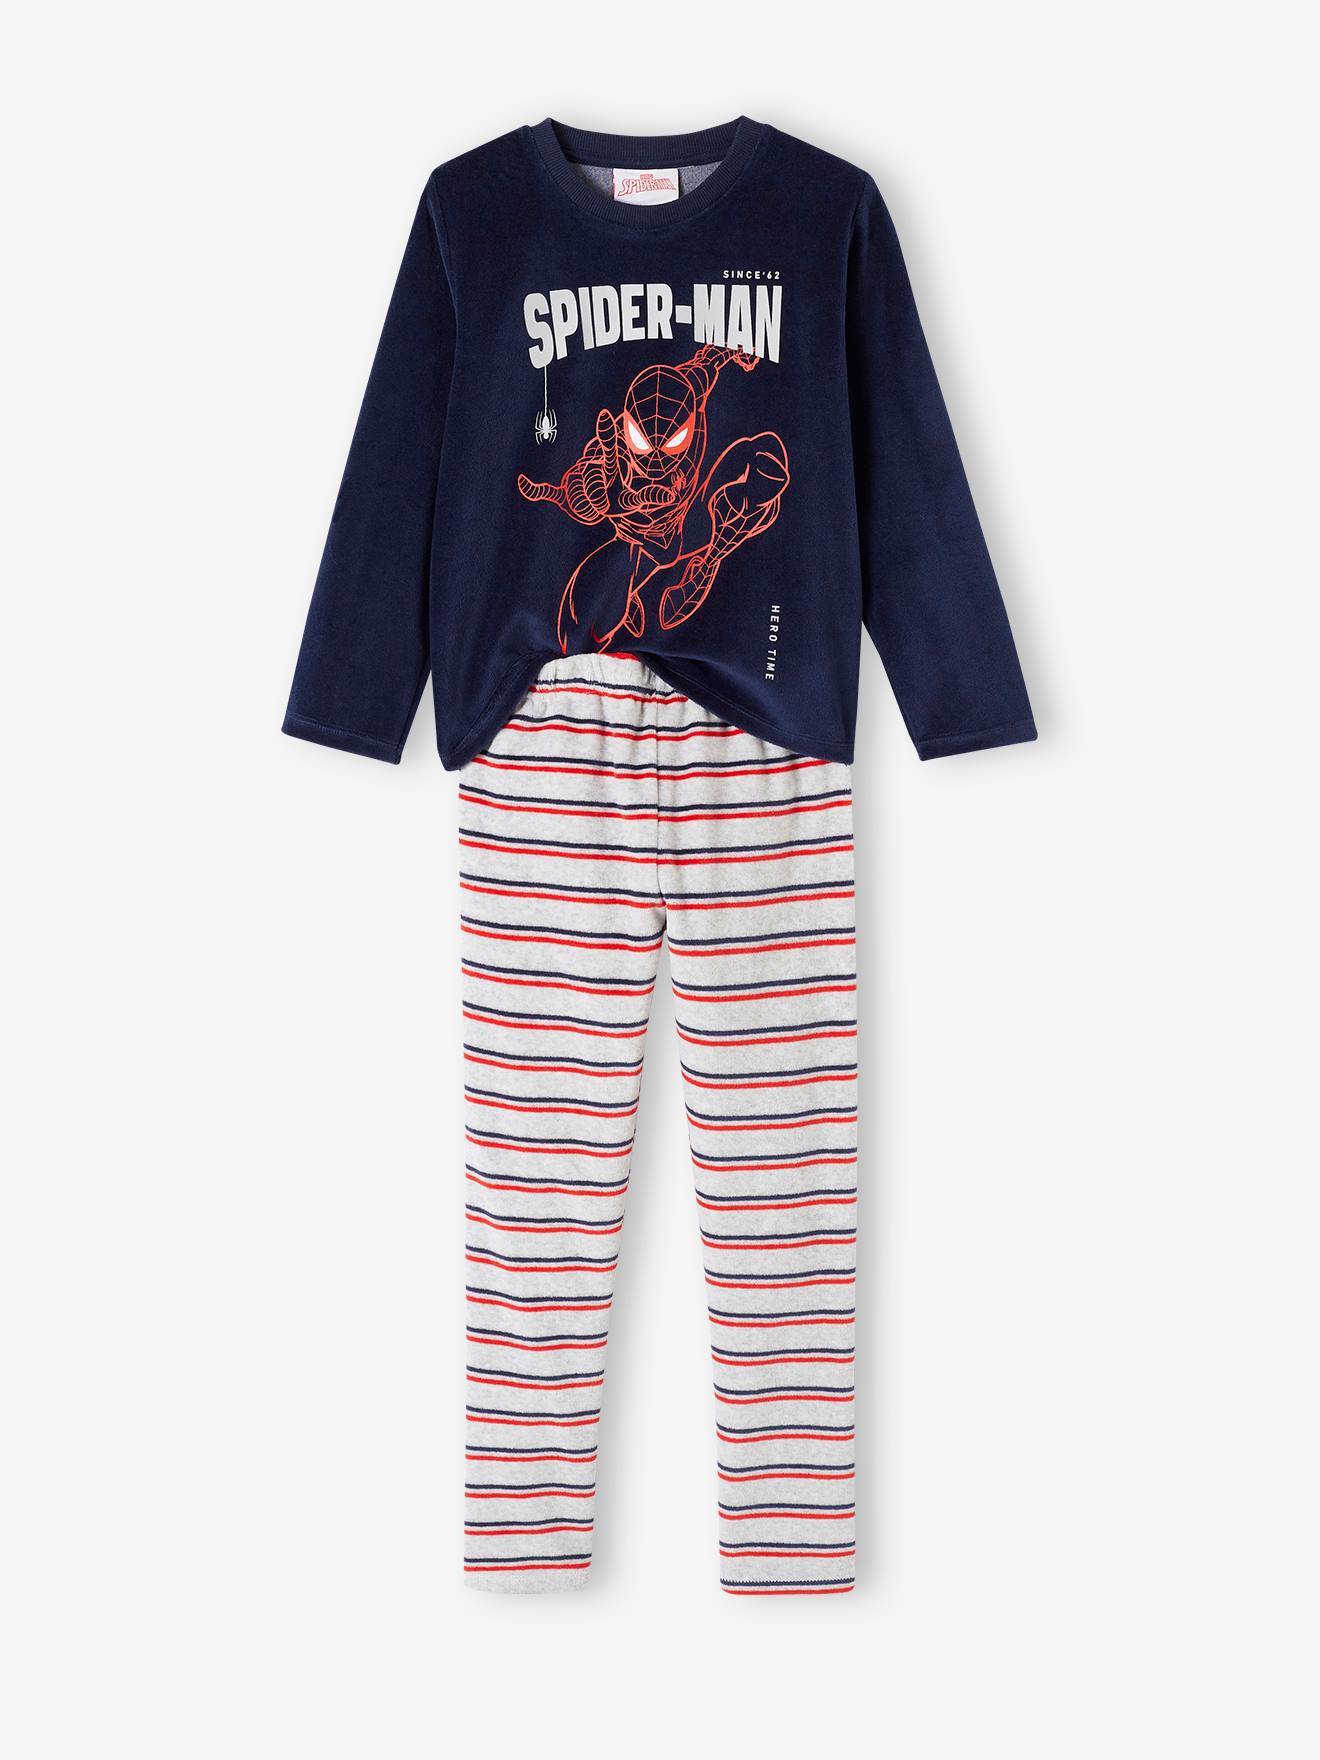 Marvel(r) Spider-Man Pyjamas in Velour for Boys navy blue